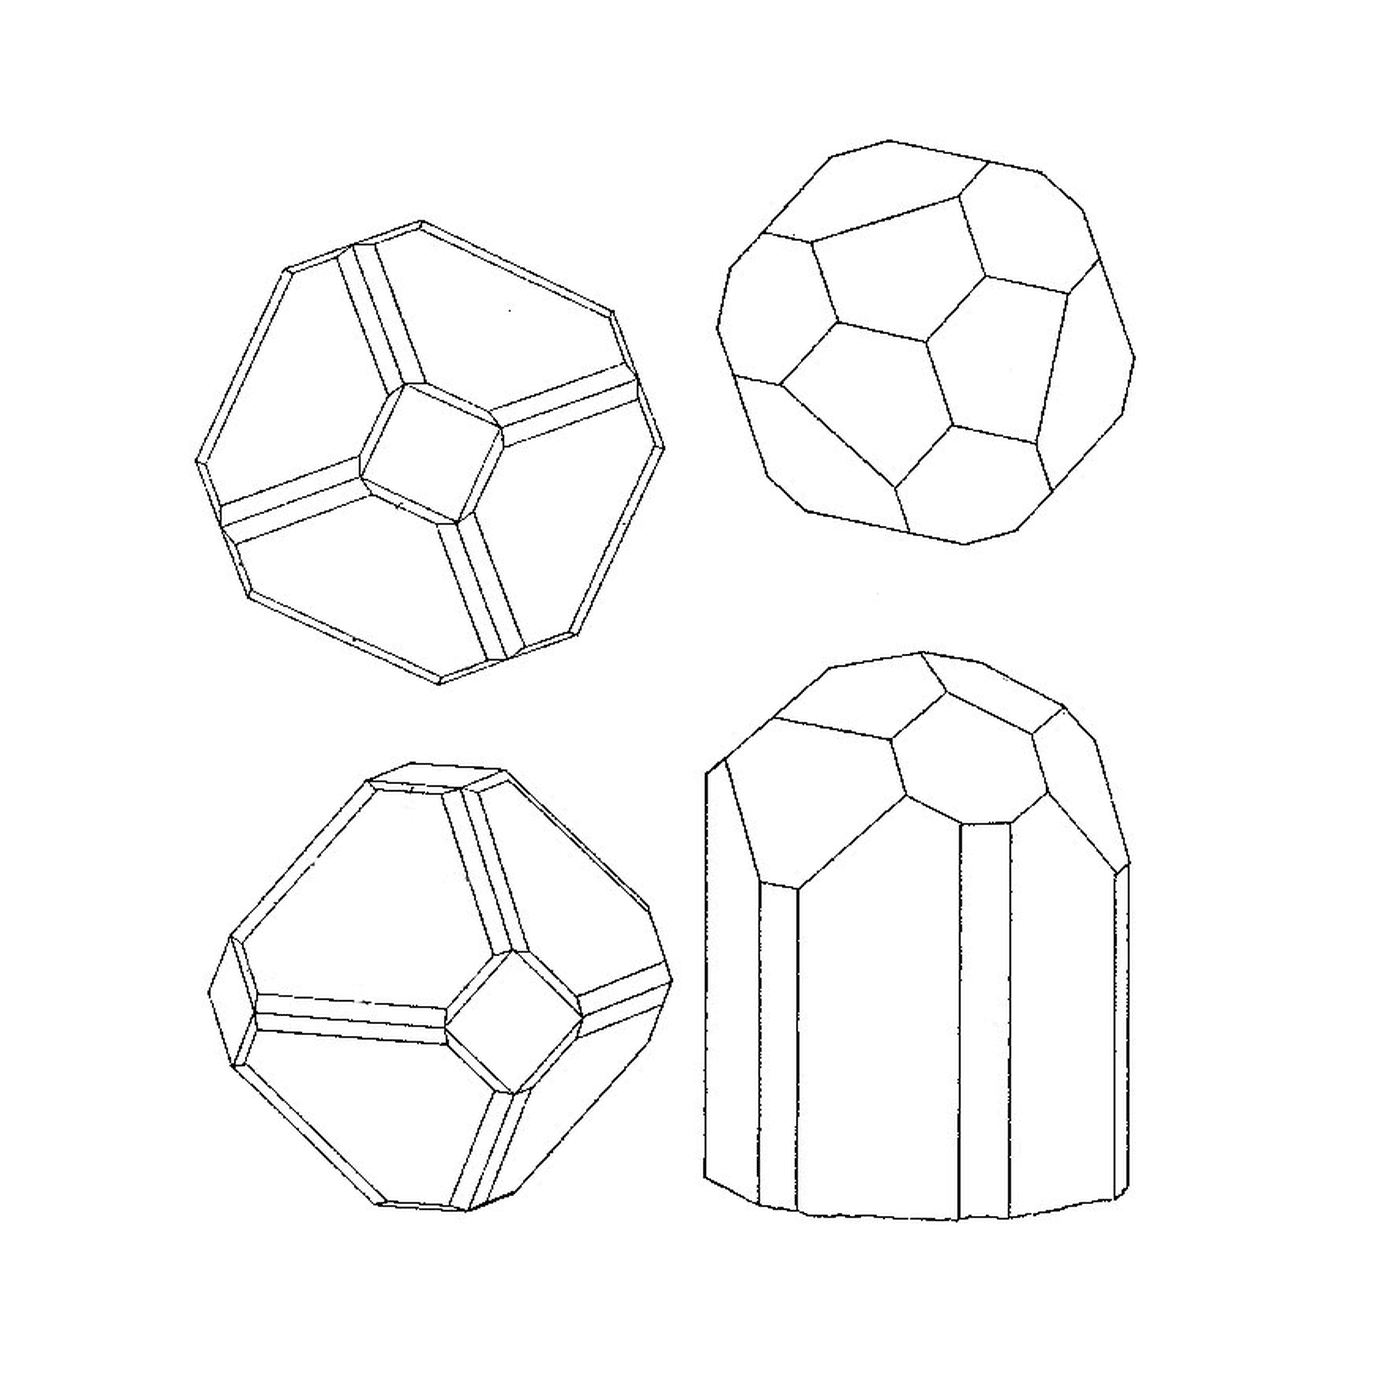  四个不同的几何形状 